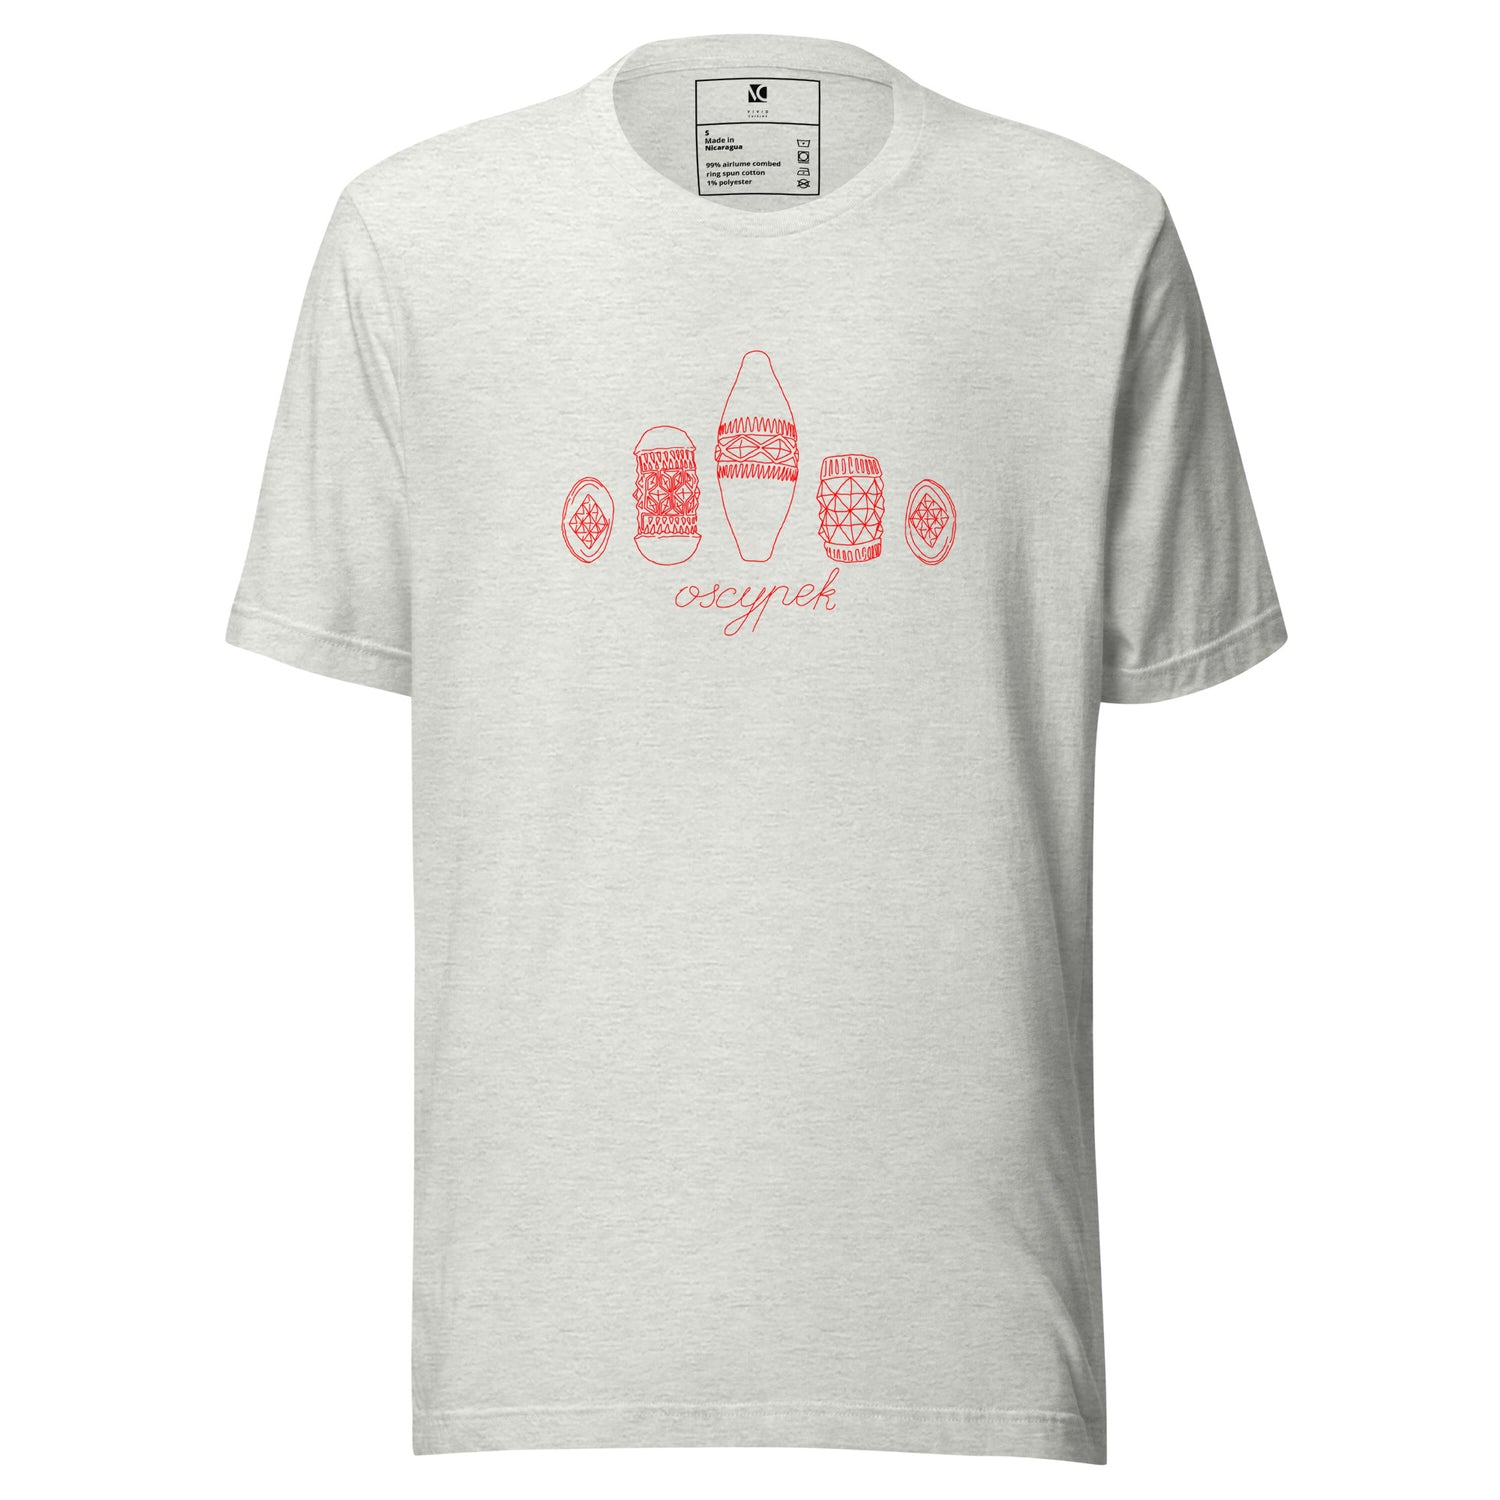 Oscypek (R) - Unisex T-Shirt